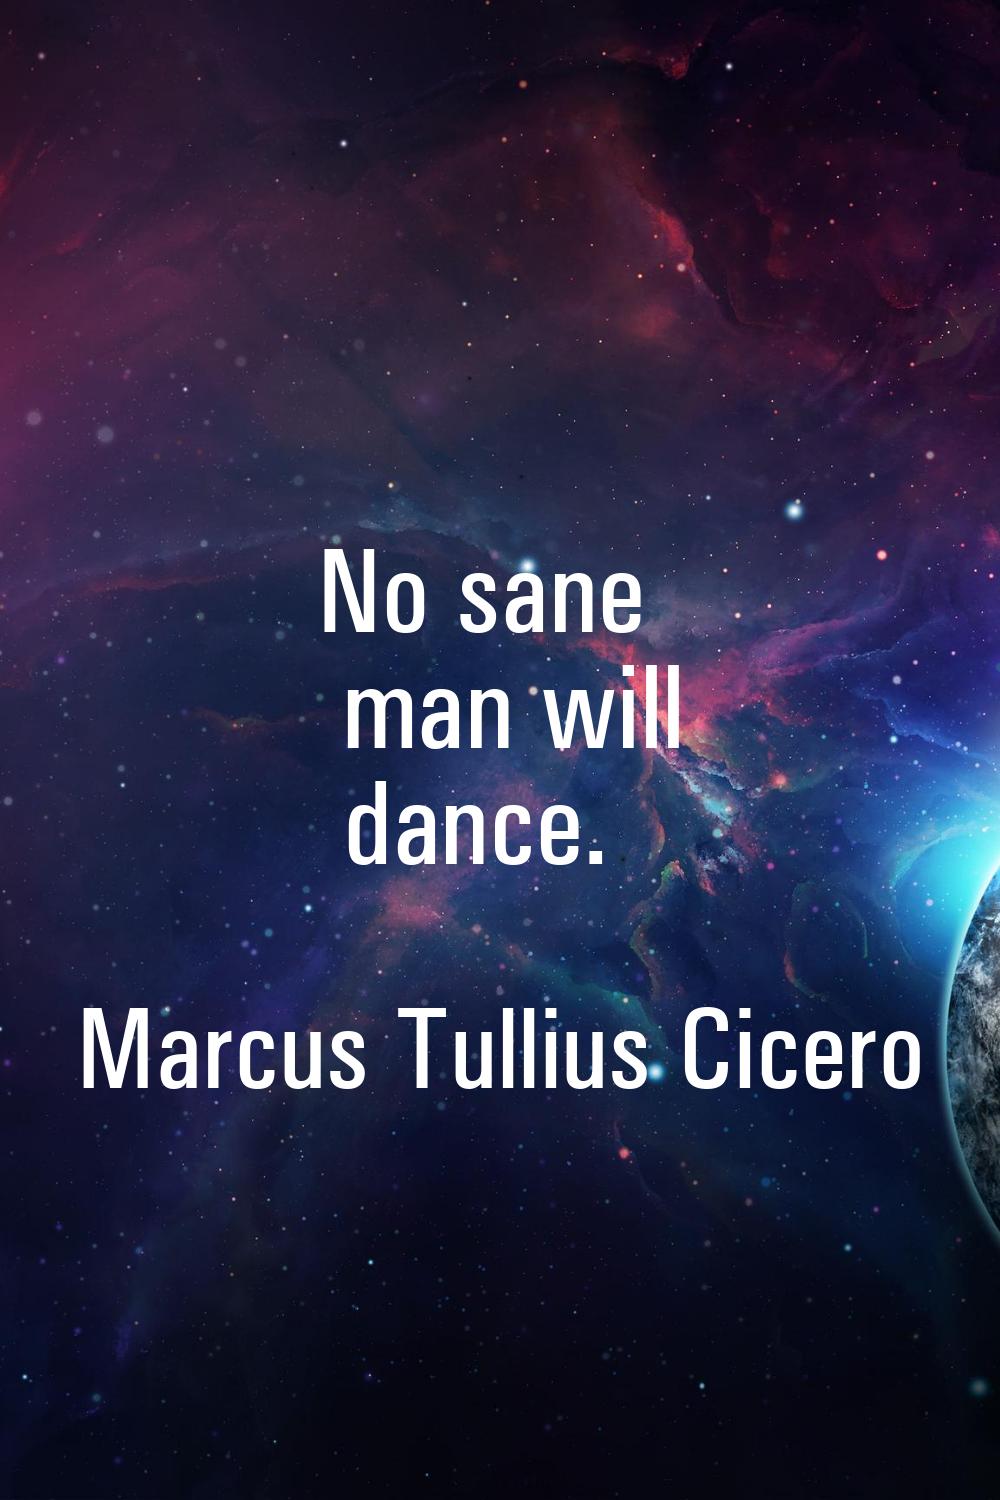 No sane man will dance.